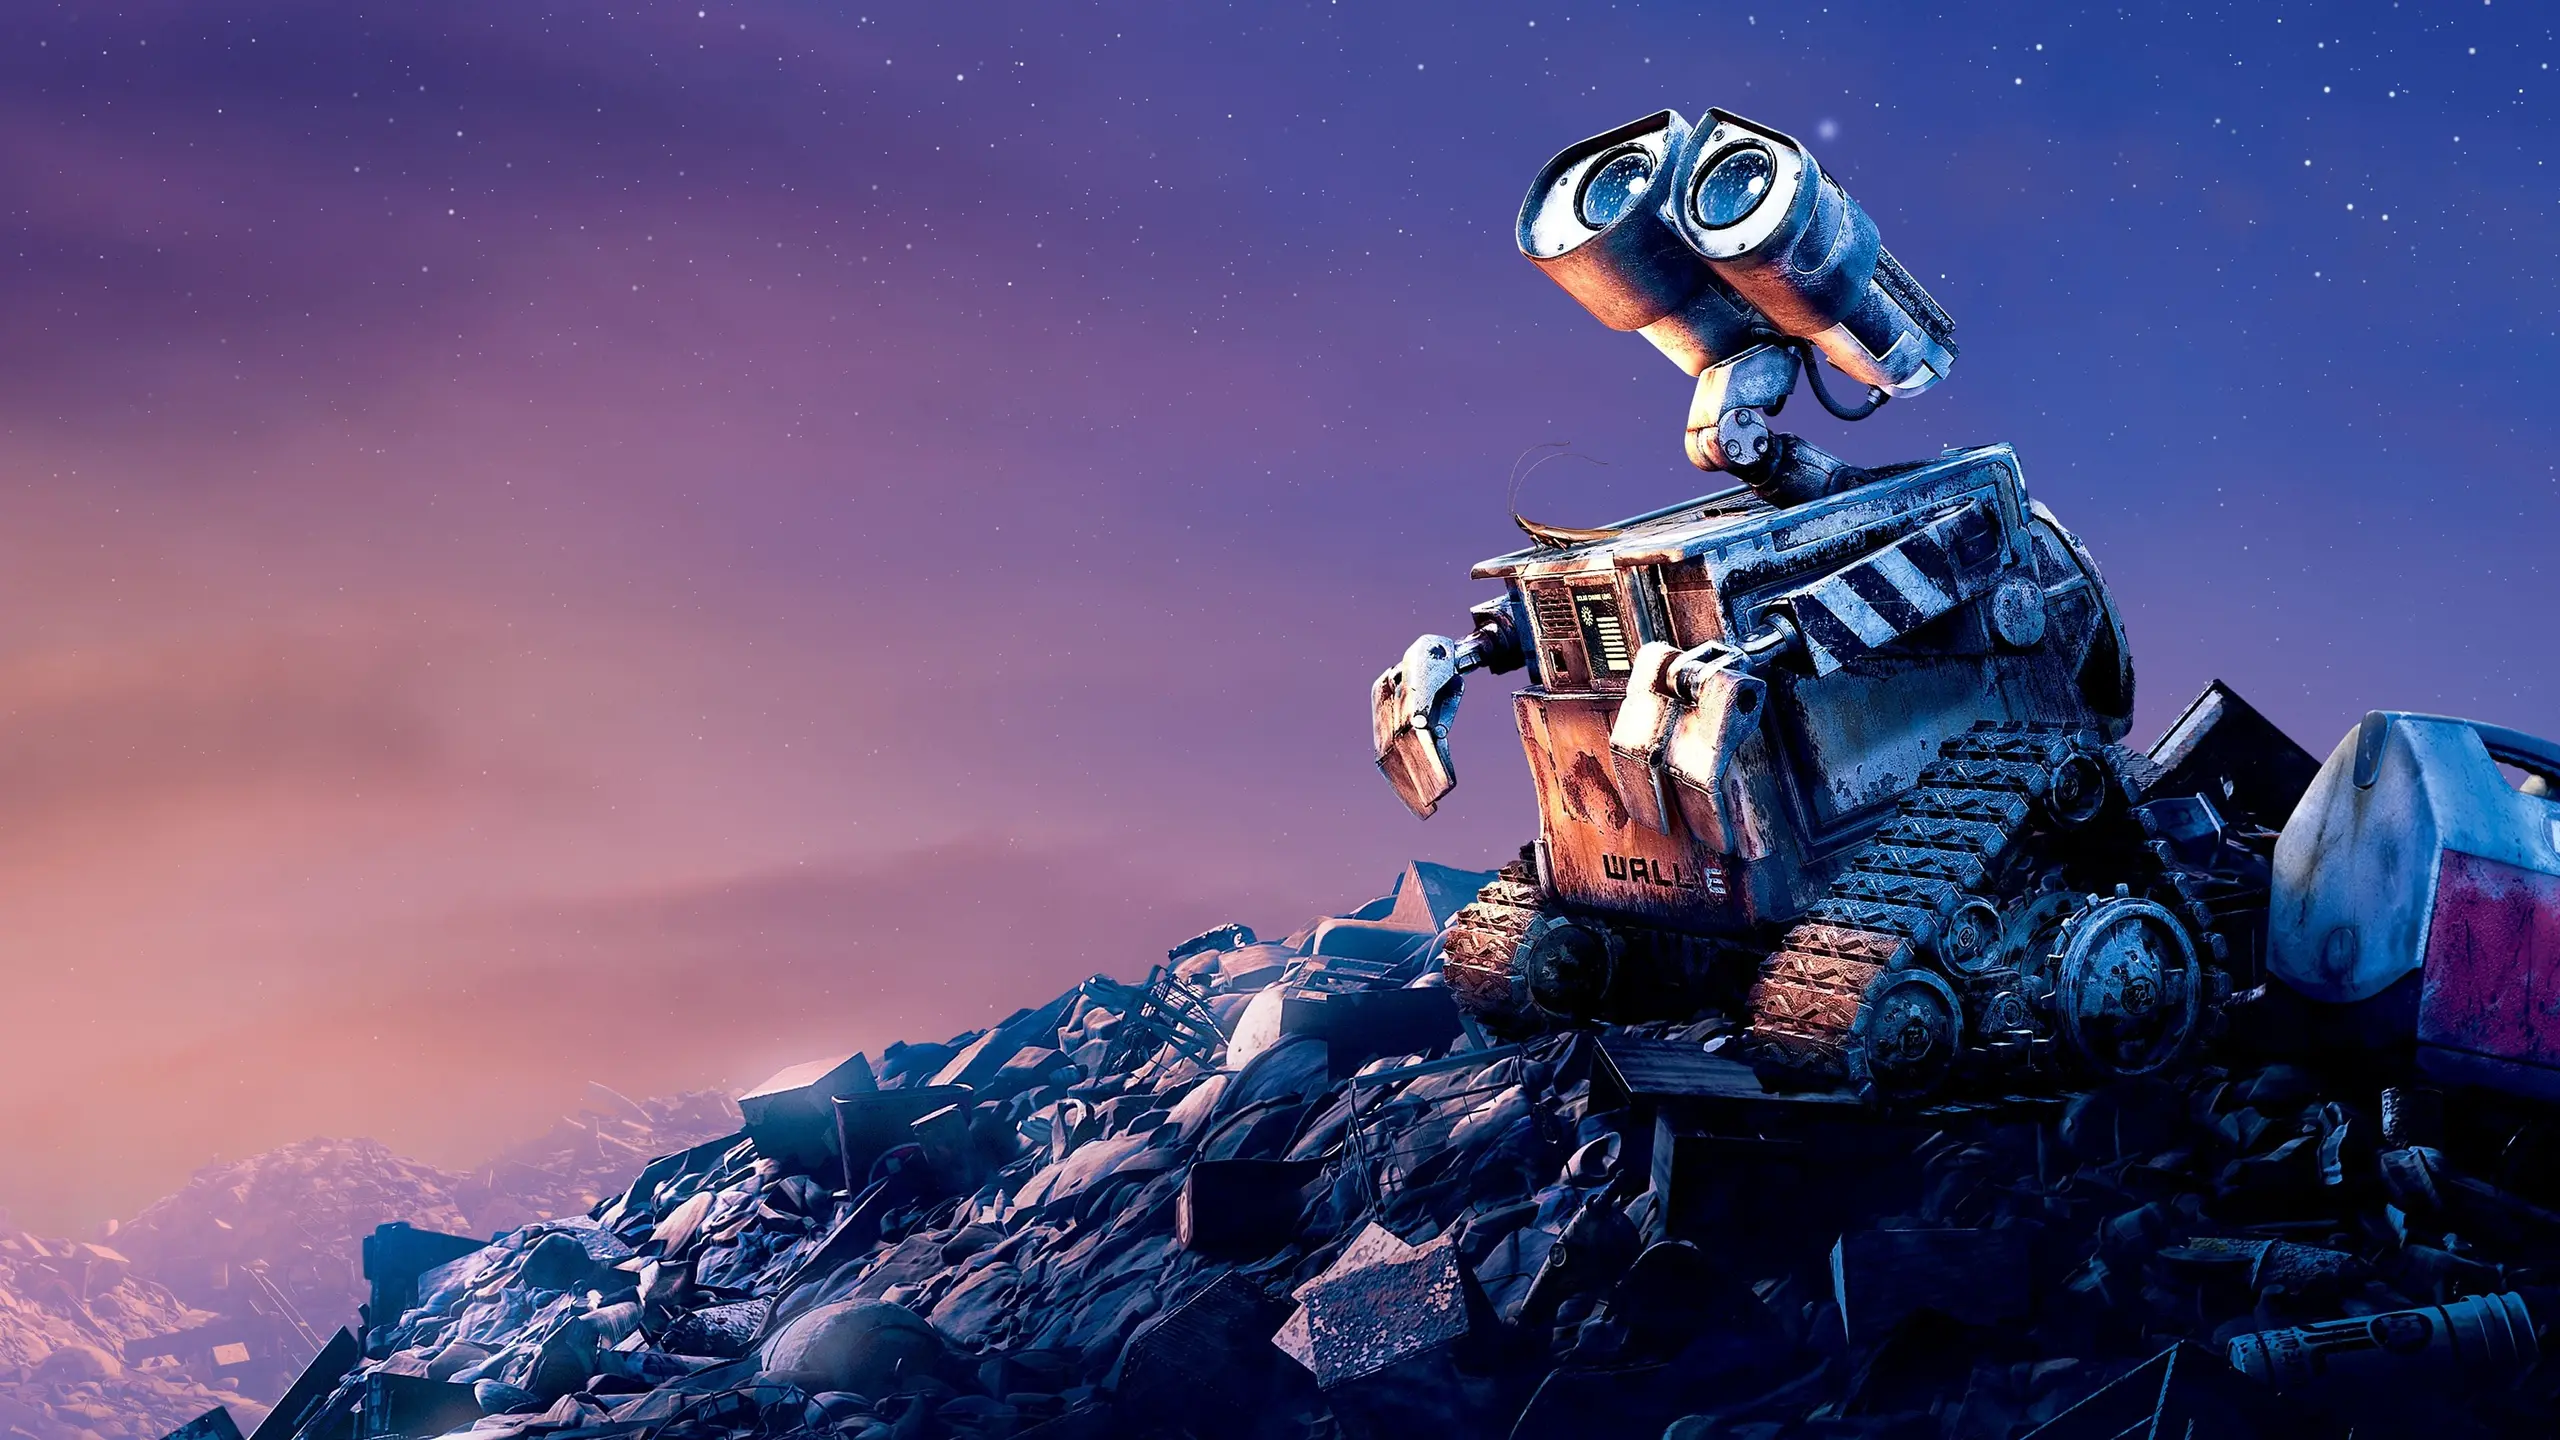 WALL·E – Der Letzte räumt die Erde auf